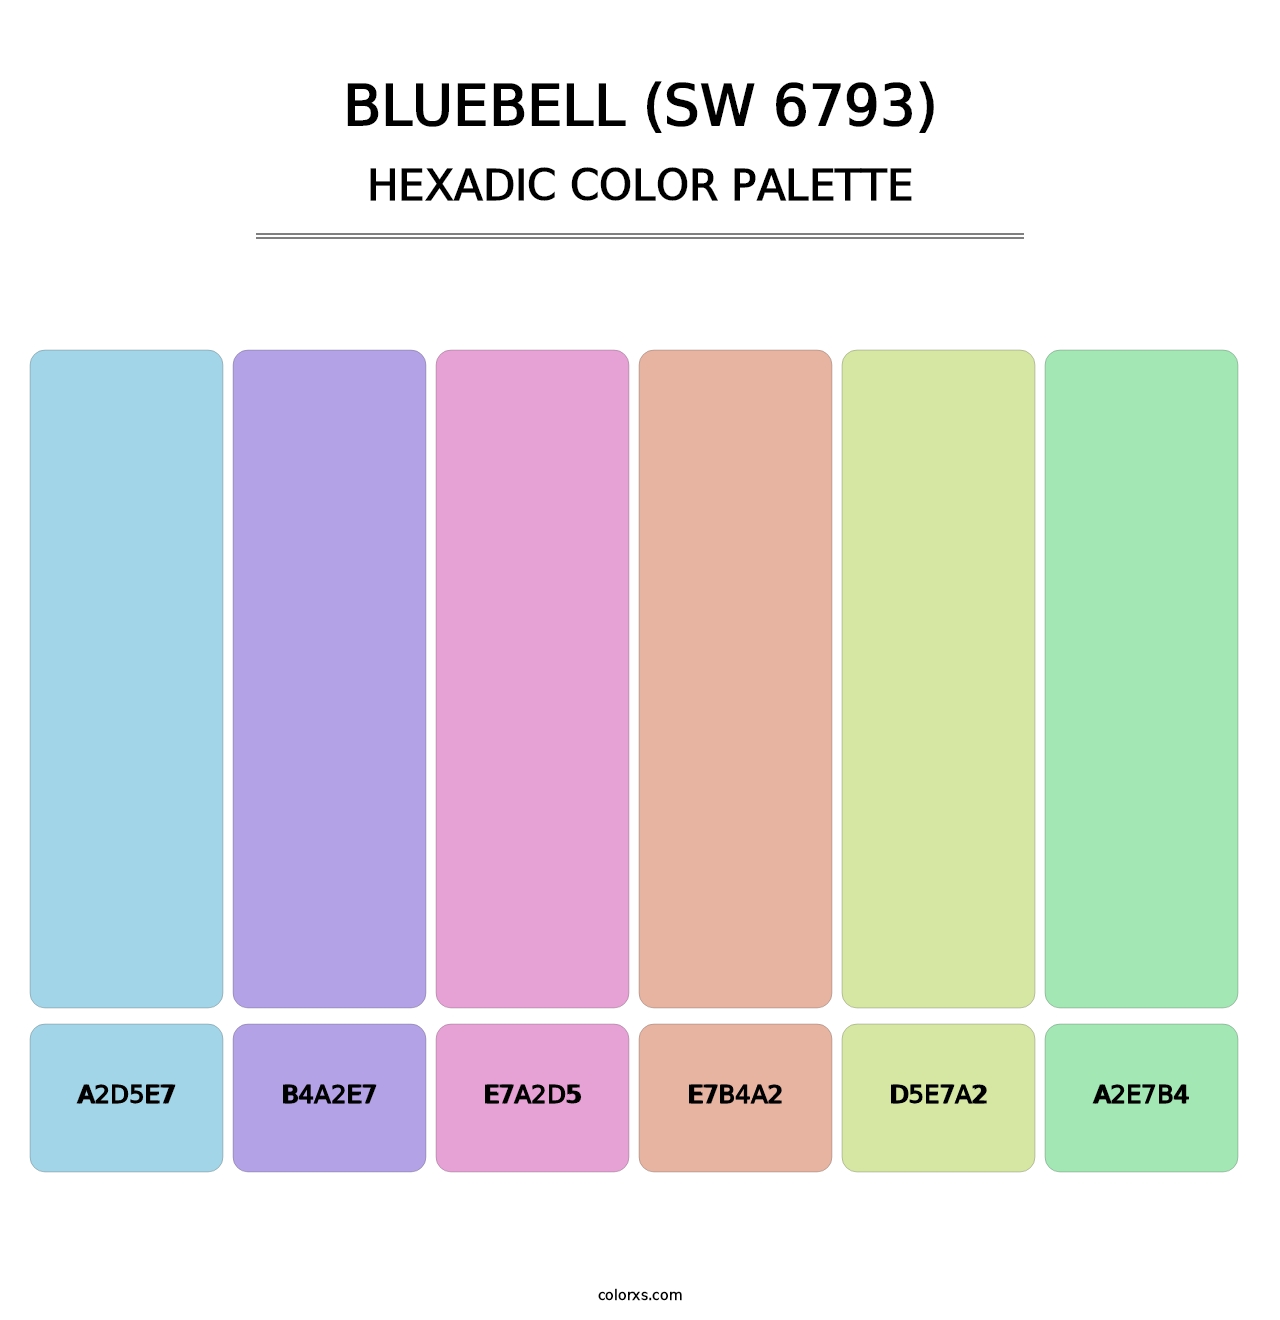 Bluebell (SW 6793) - Hexadic Color Palette